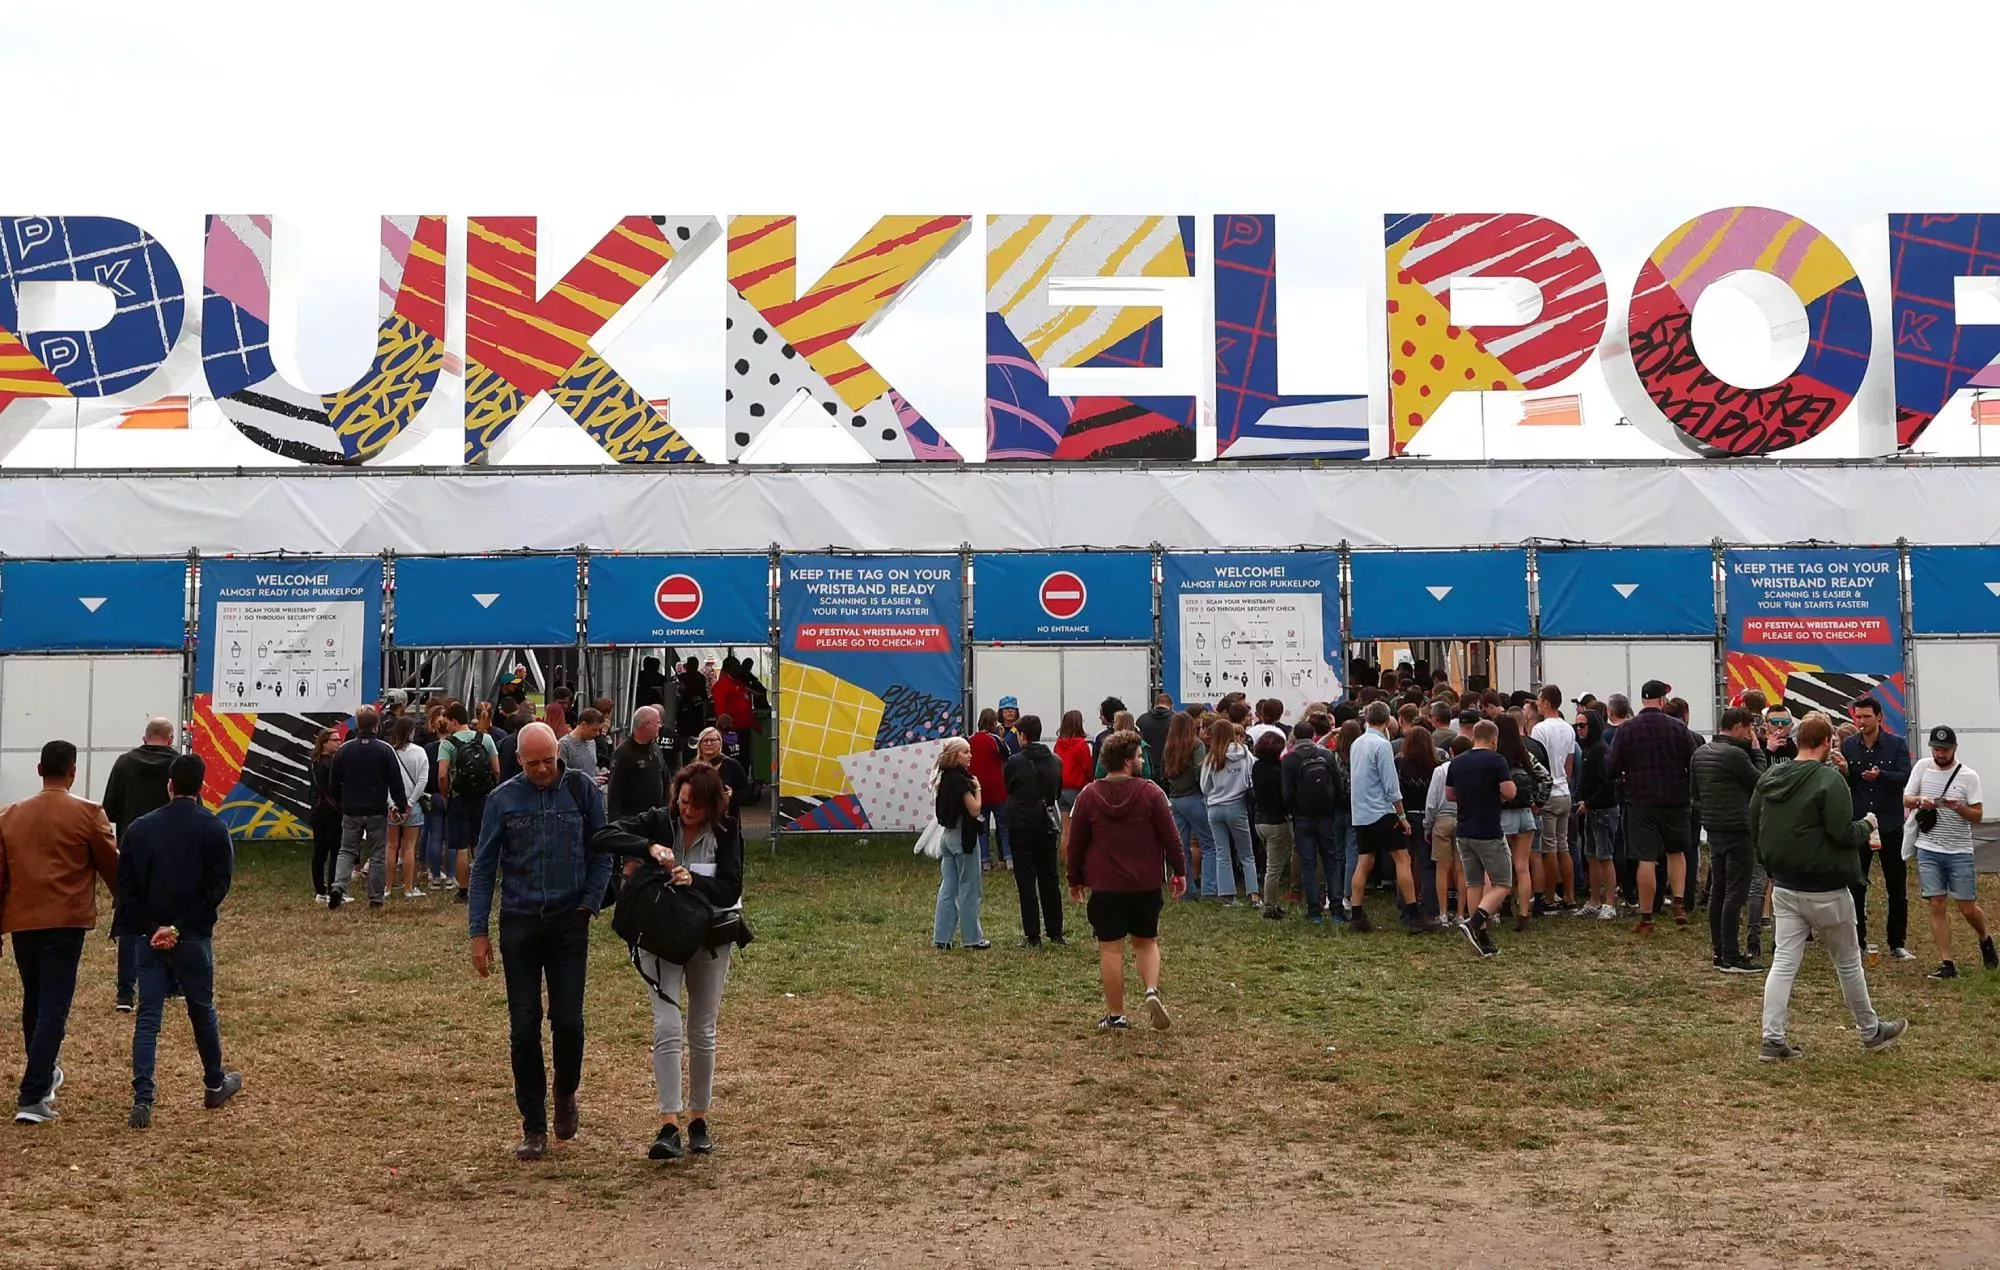 Se cancela el festival Pukkelpop debido a la insuficiente capacidad de ensayo del COVID-19